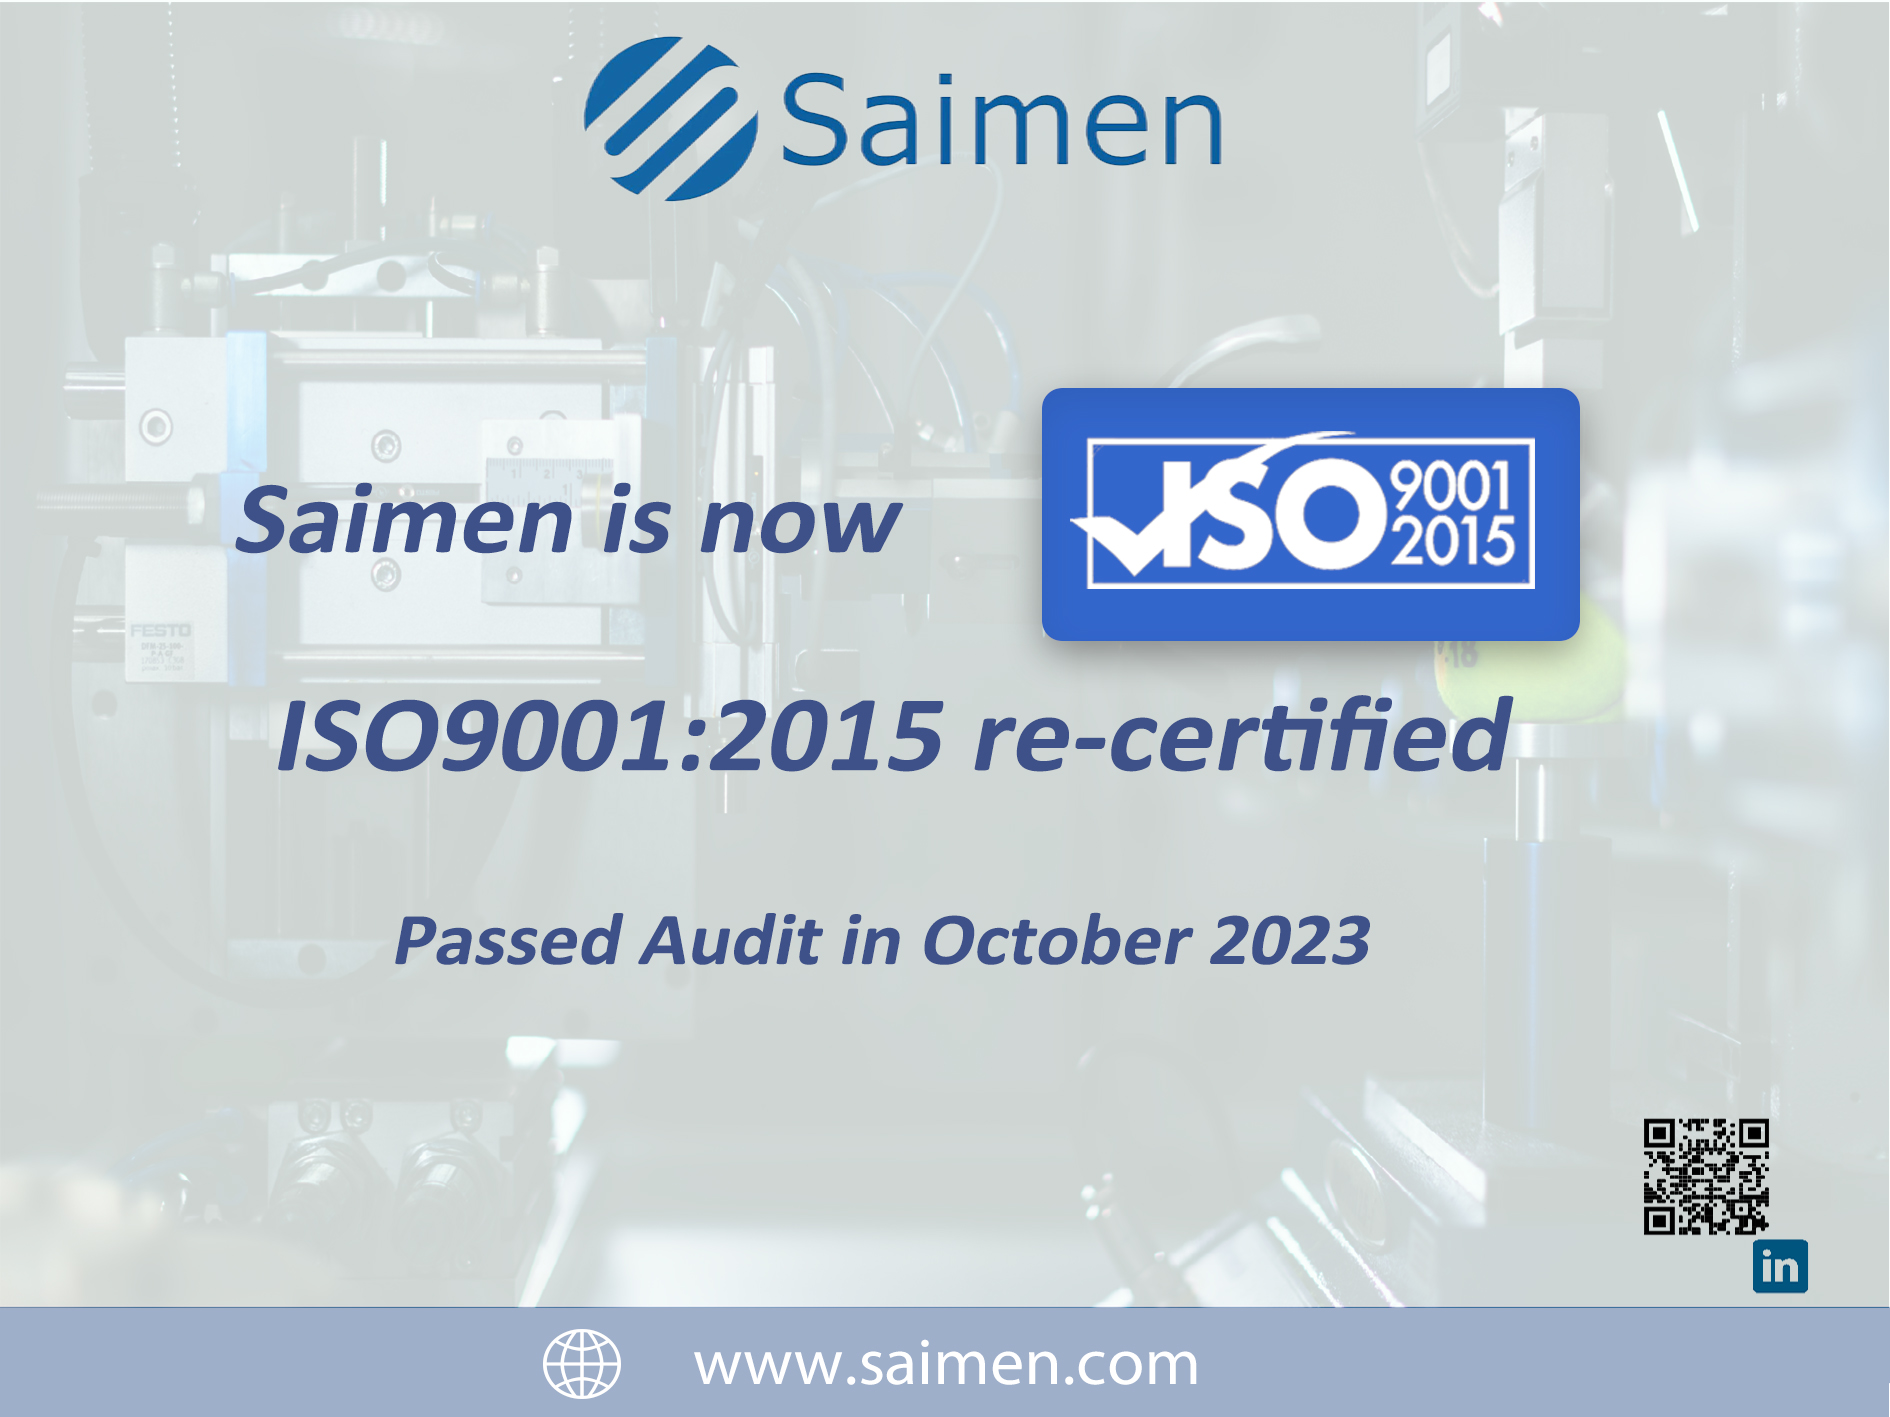 ¡Enhorabuena a saimen por la certificación ISO9001!